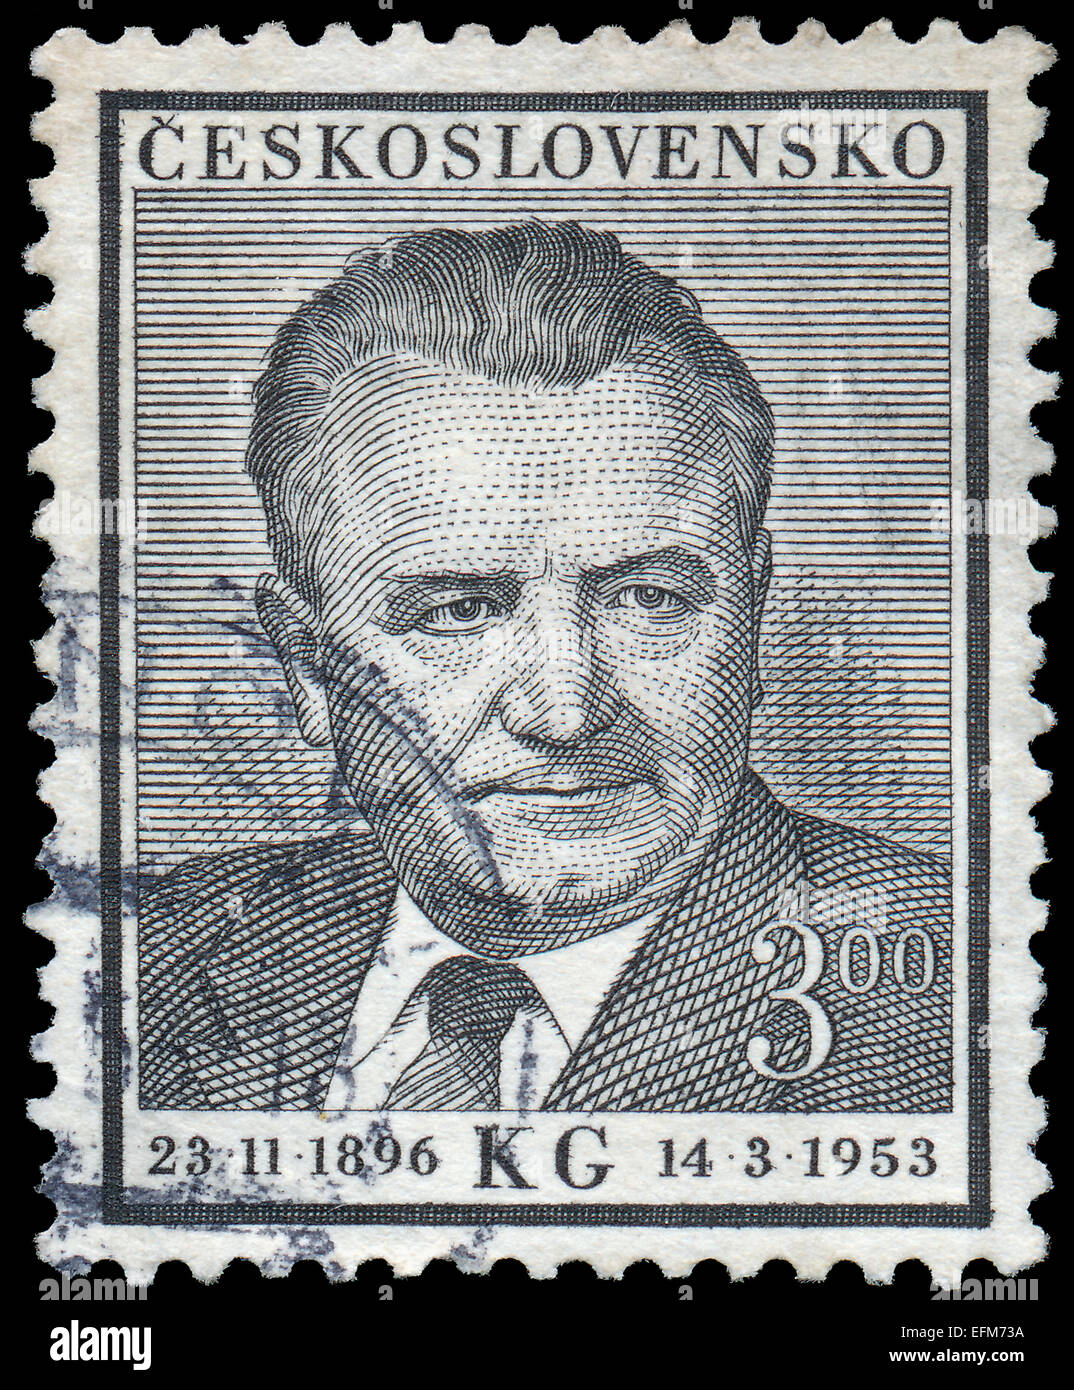 Tschechoslowakei - ca. 1953: Eine Briefmarke gedruckt in der Tschechoslowakei, zeigt Porträt Klement Gottwald (1896-1953) Ministerpräsident und p Stockfoto